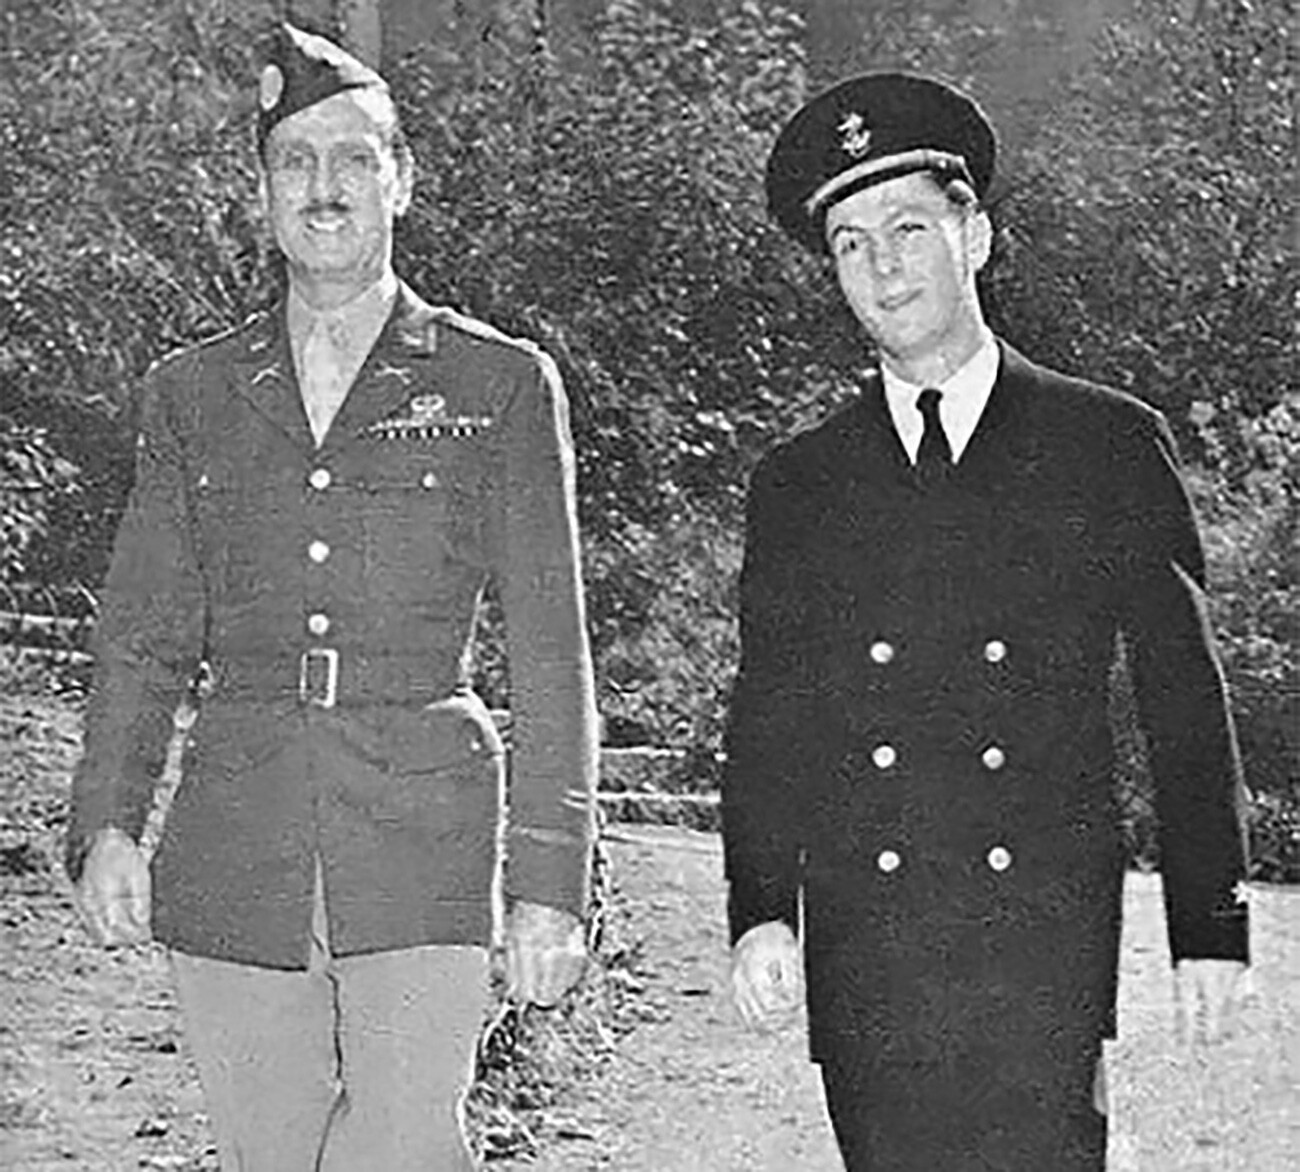 Serge Obolensky (a sinistra) con la divisa dell’U.S. Army

